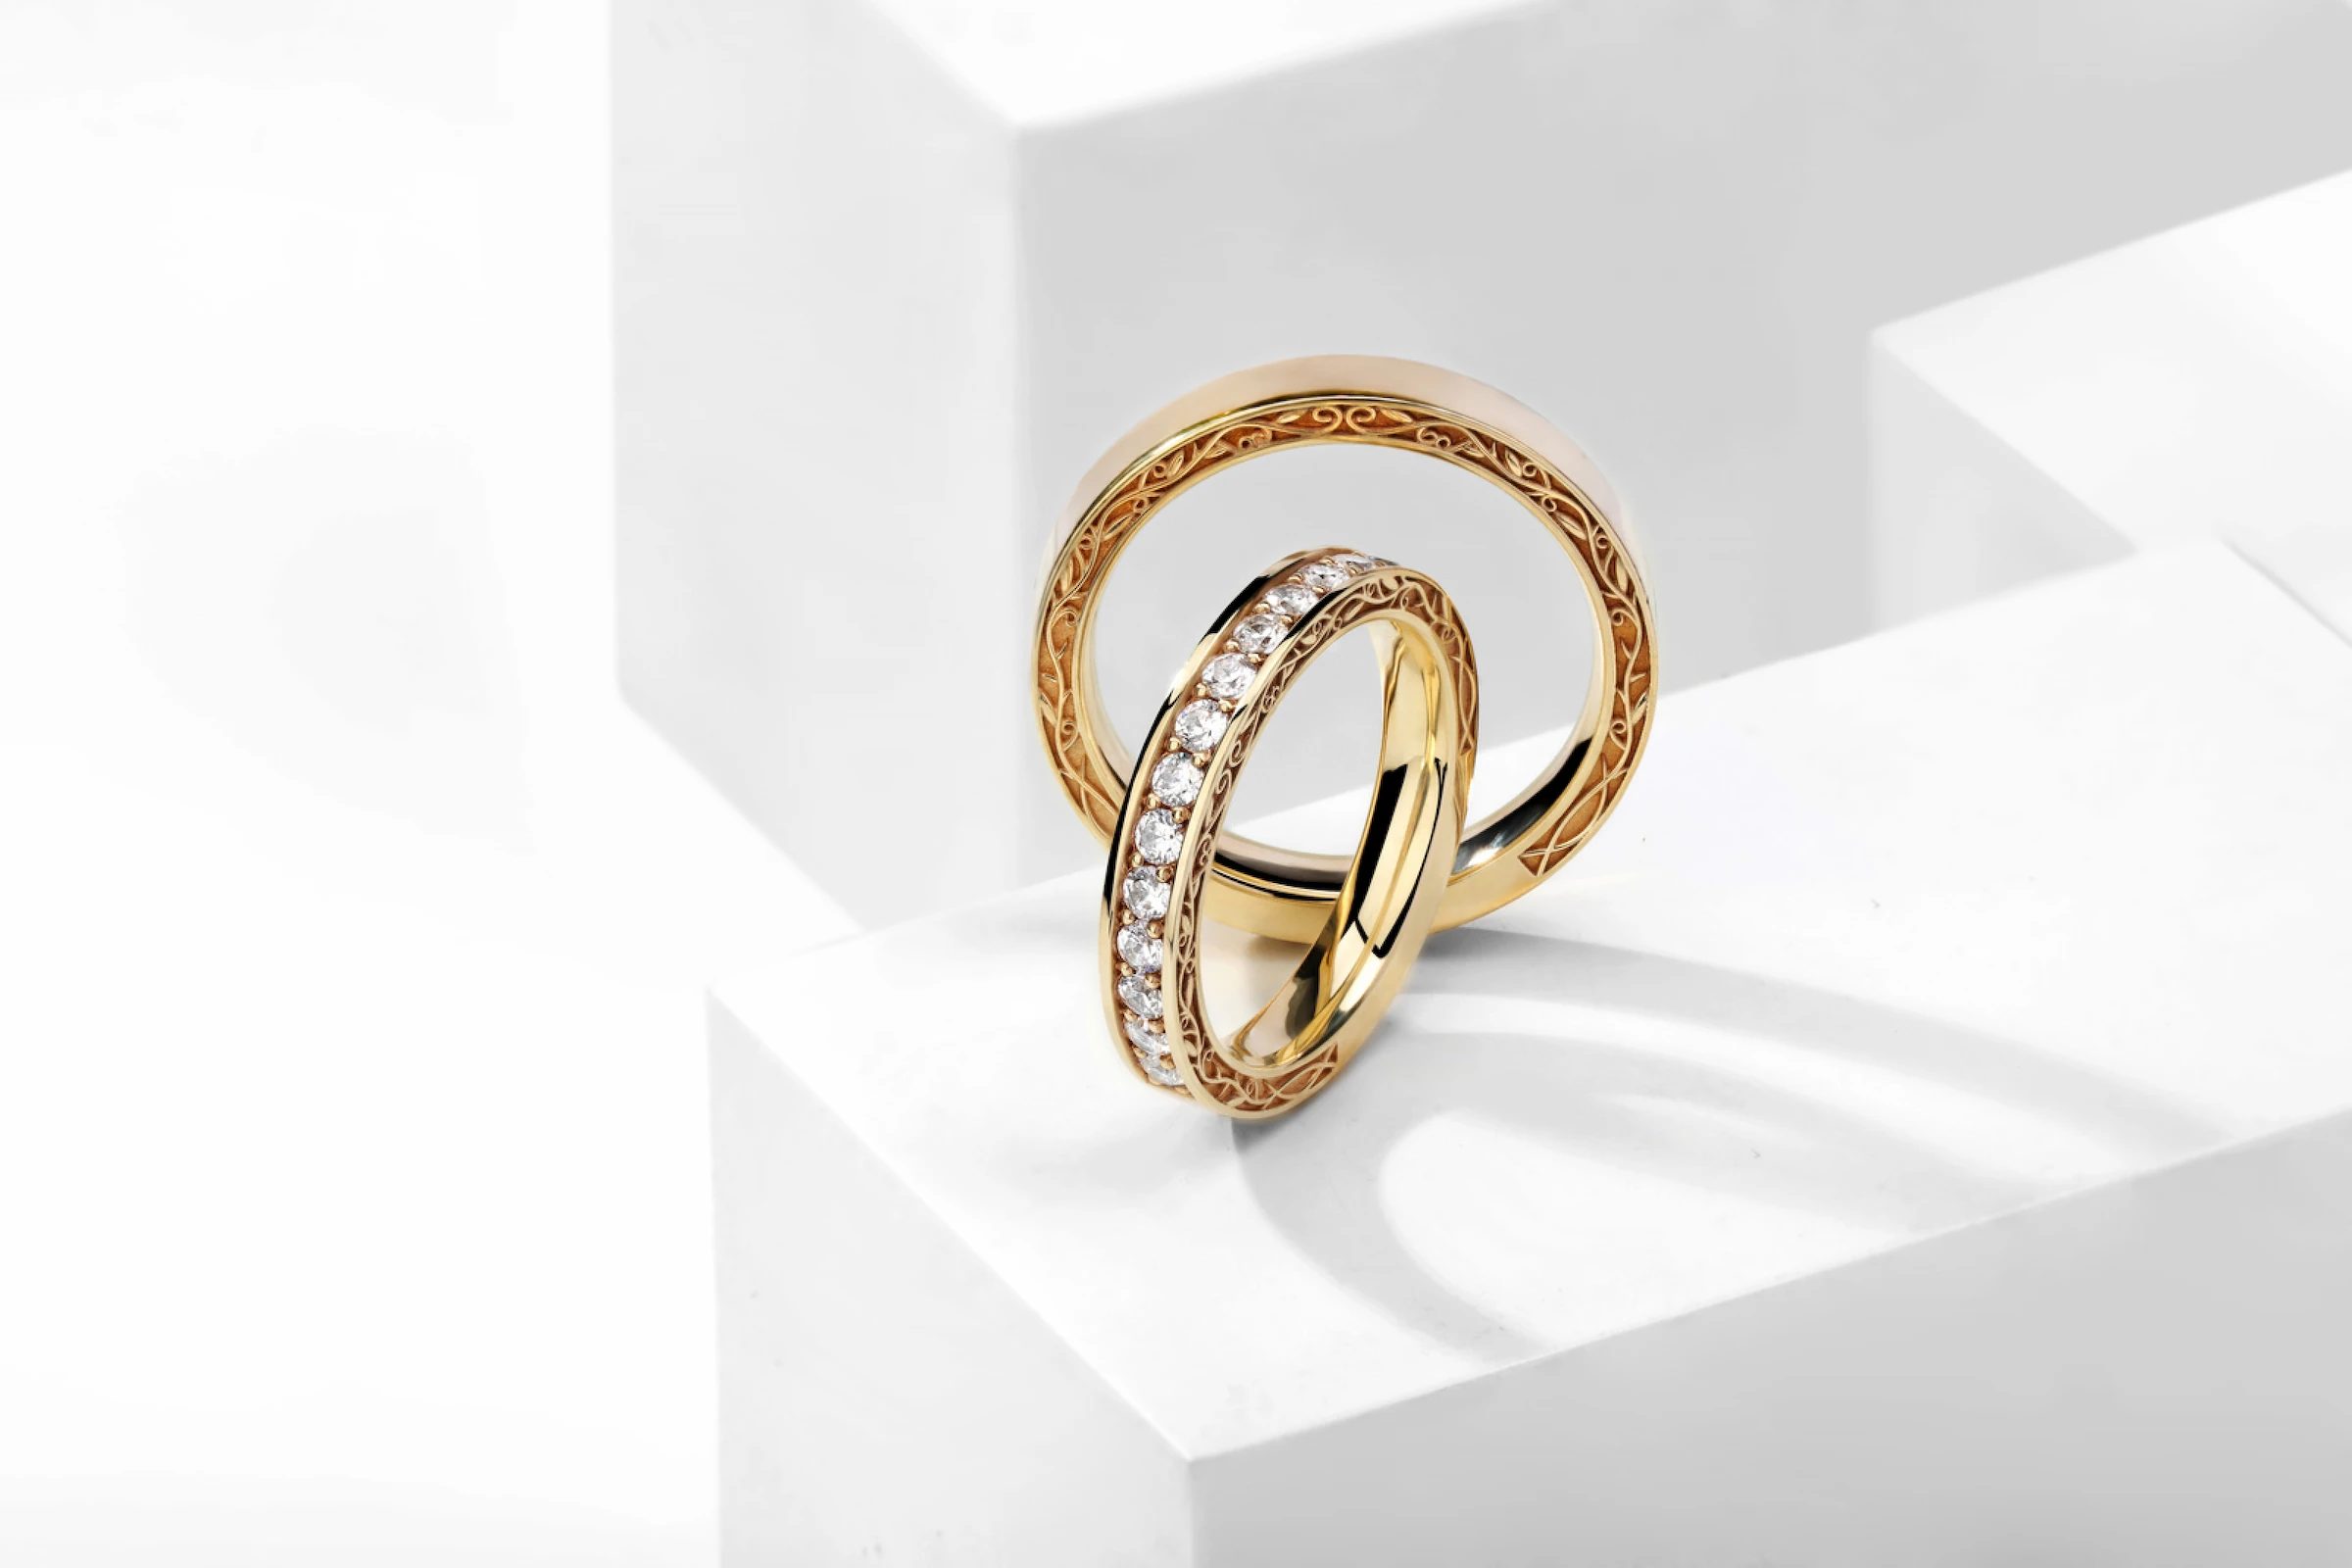 Узкие парные помолвочные кольца из желтого золота с небольшими бриллиантами